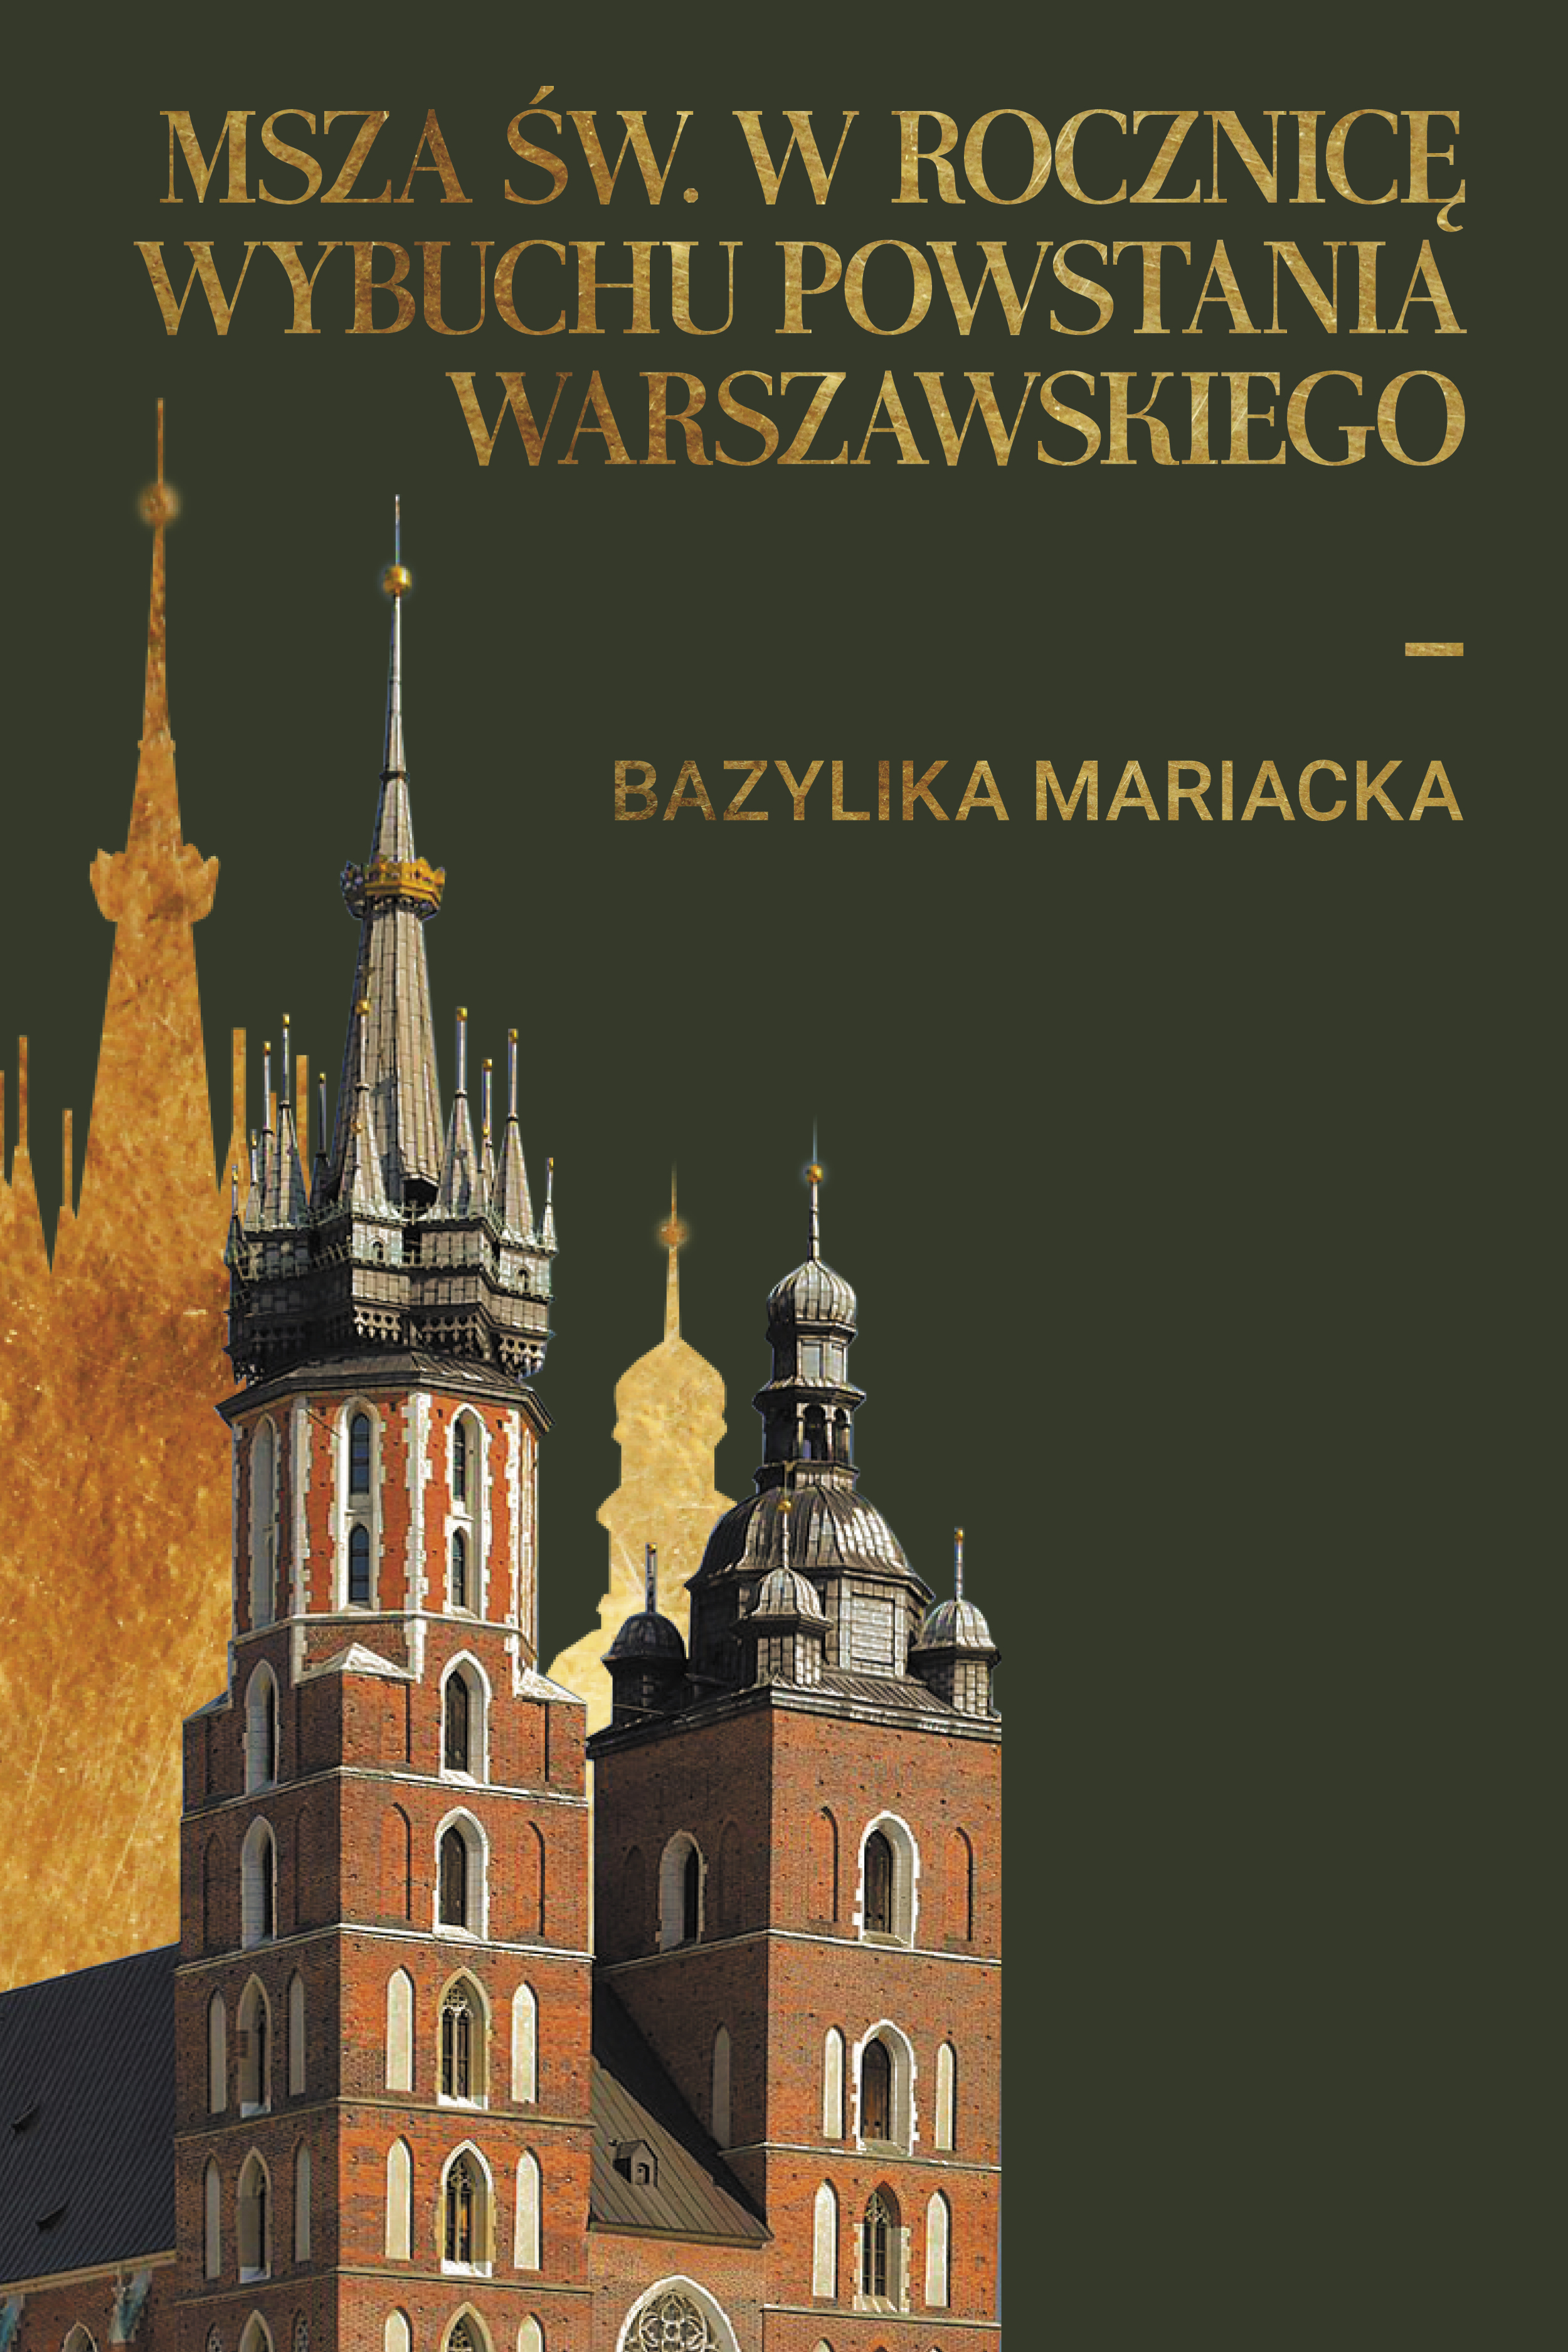 Msza św. w rocznicę wybuchu powstania warszawskiego